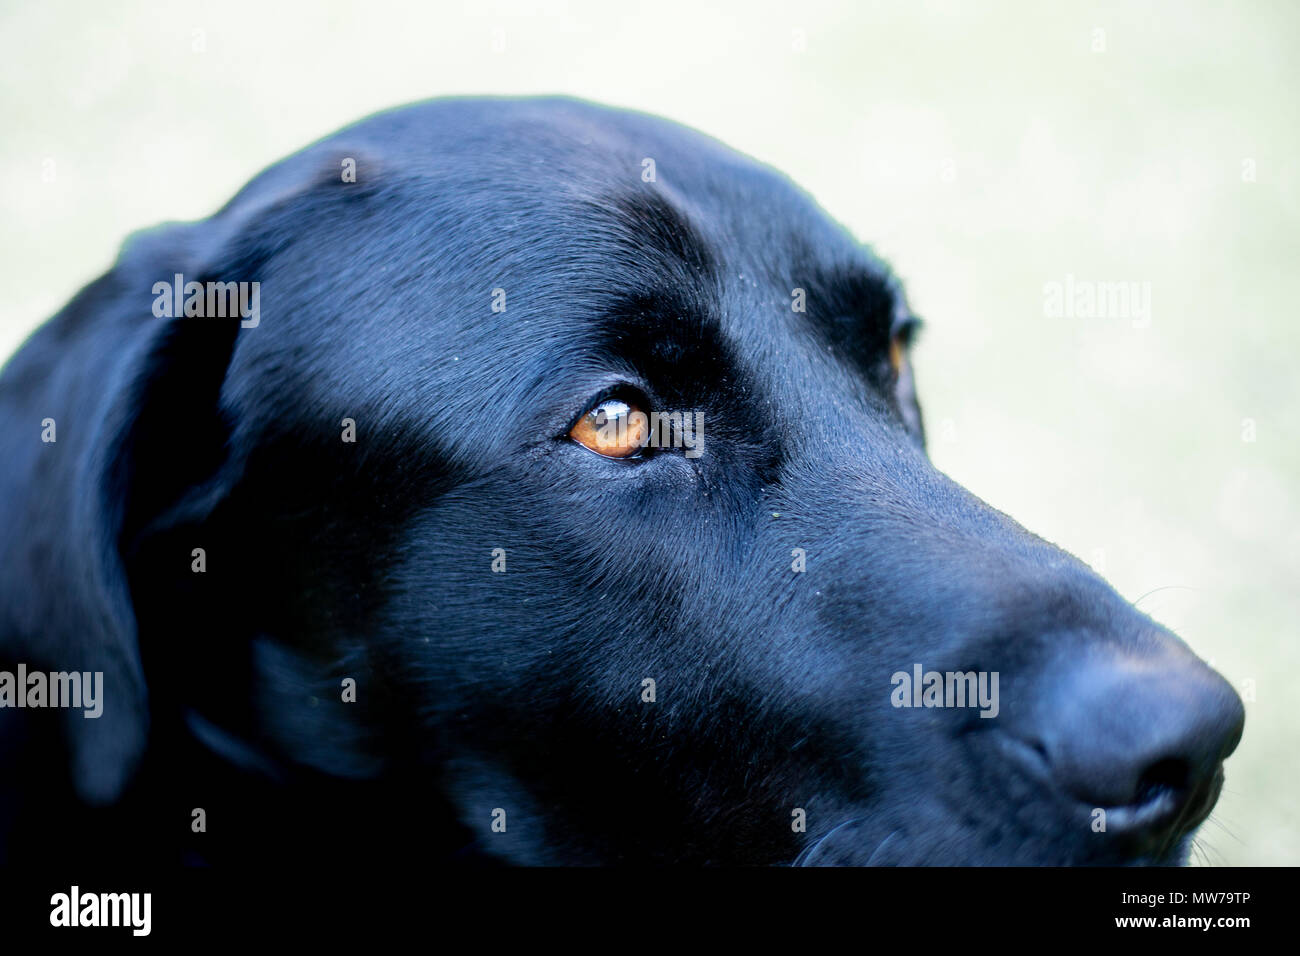 Black labrador retriever head close up. Stock Photo